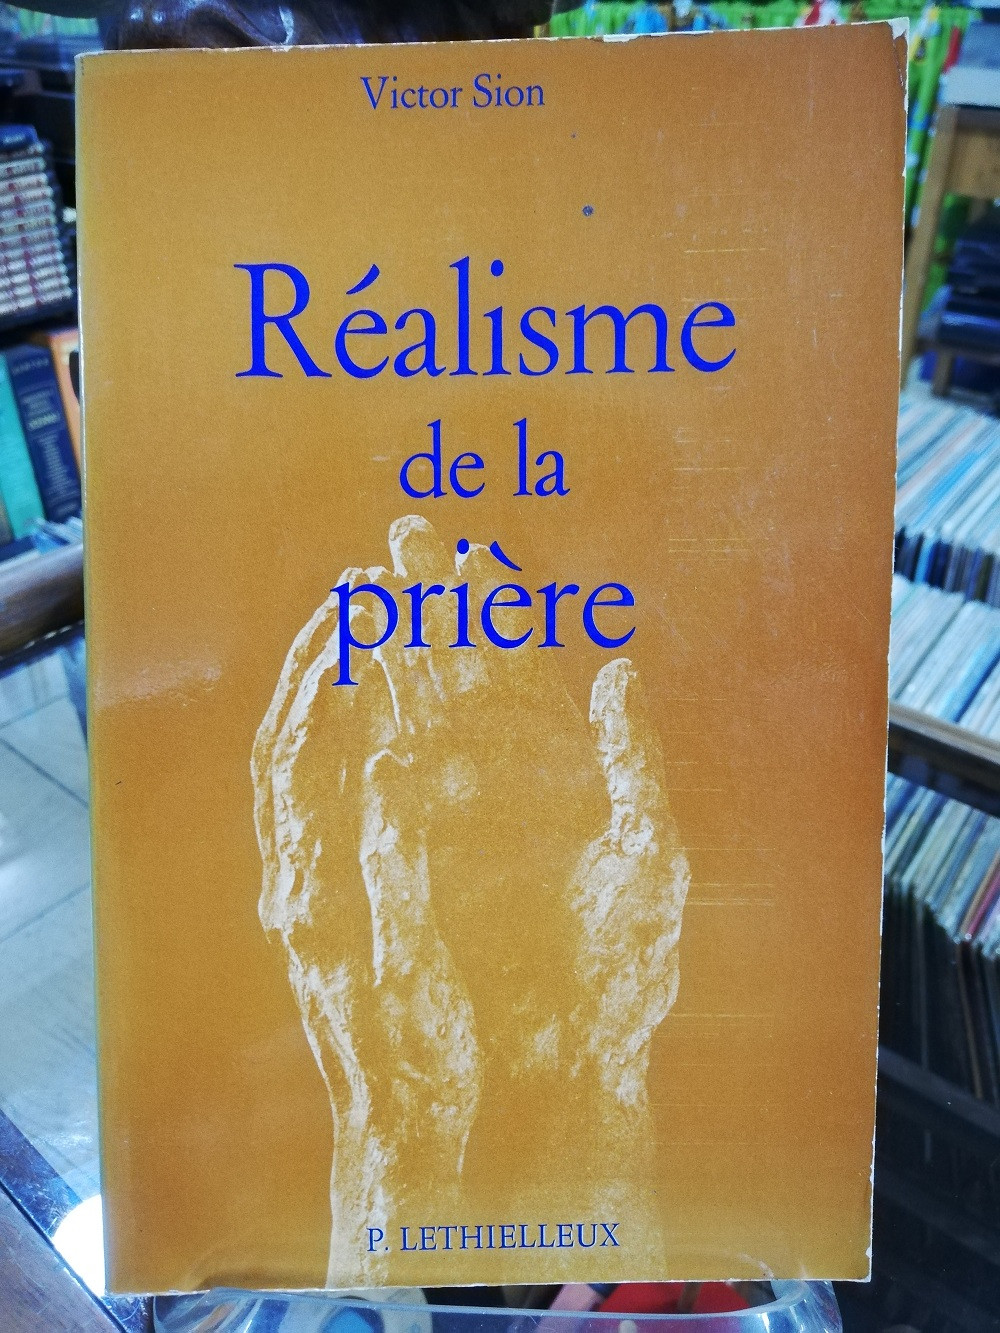 Imagen RÉALISME DE LA PRIERE - VICTOR SION 1